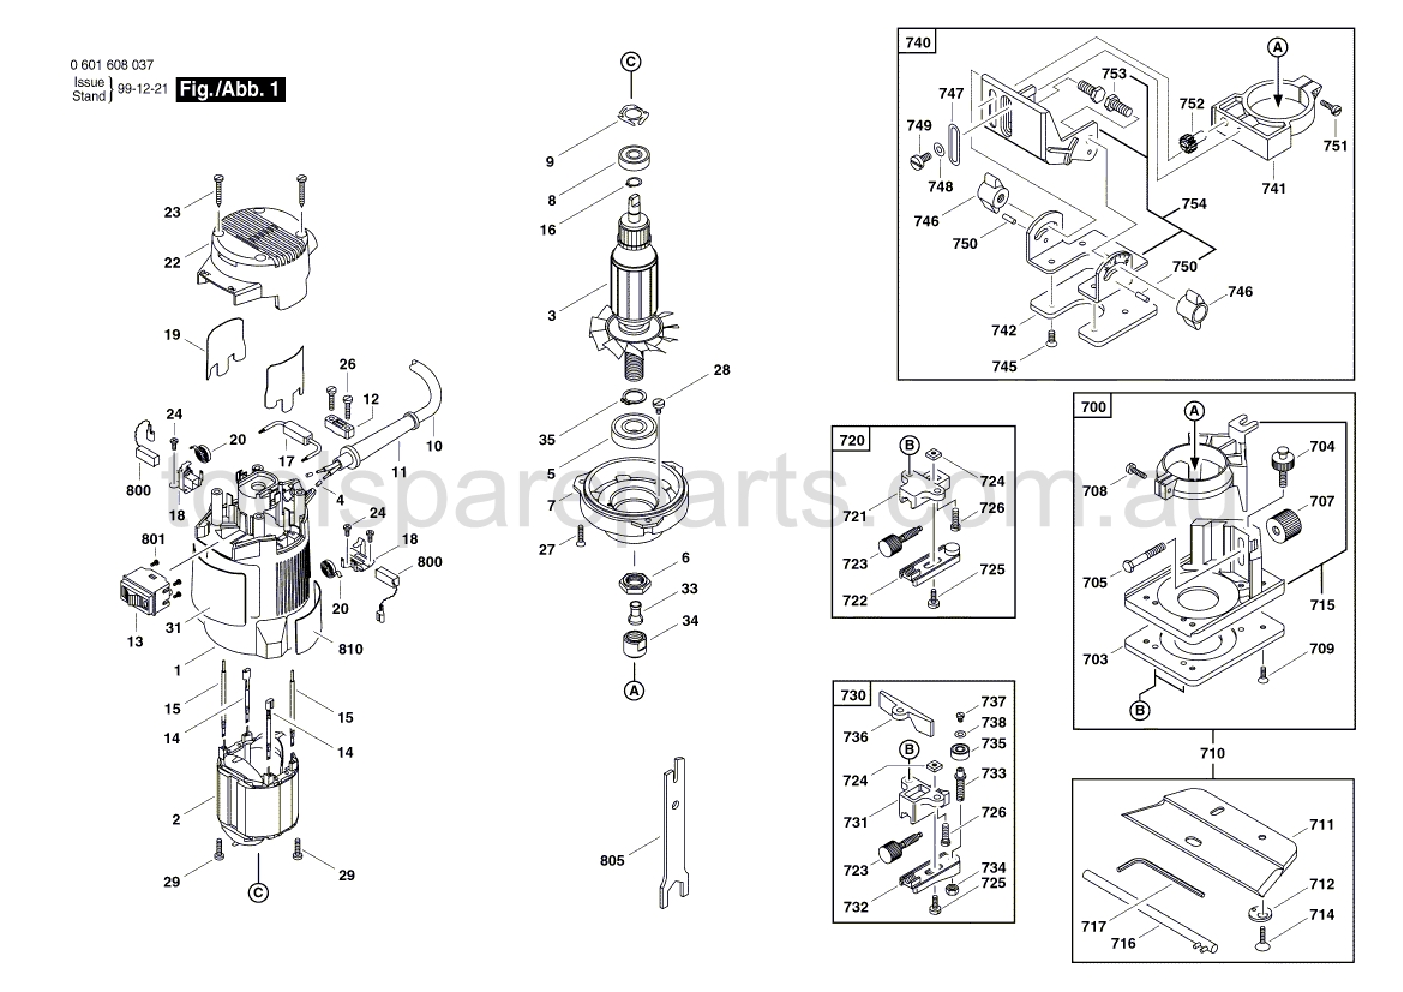 Bosch GUF 4-22 A 0601608037  Diagram 1